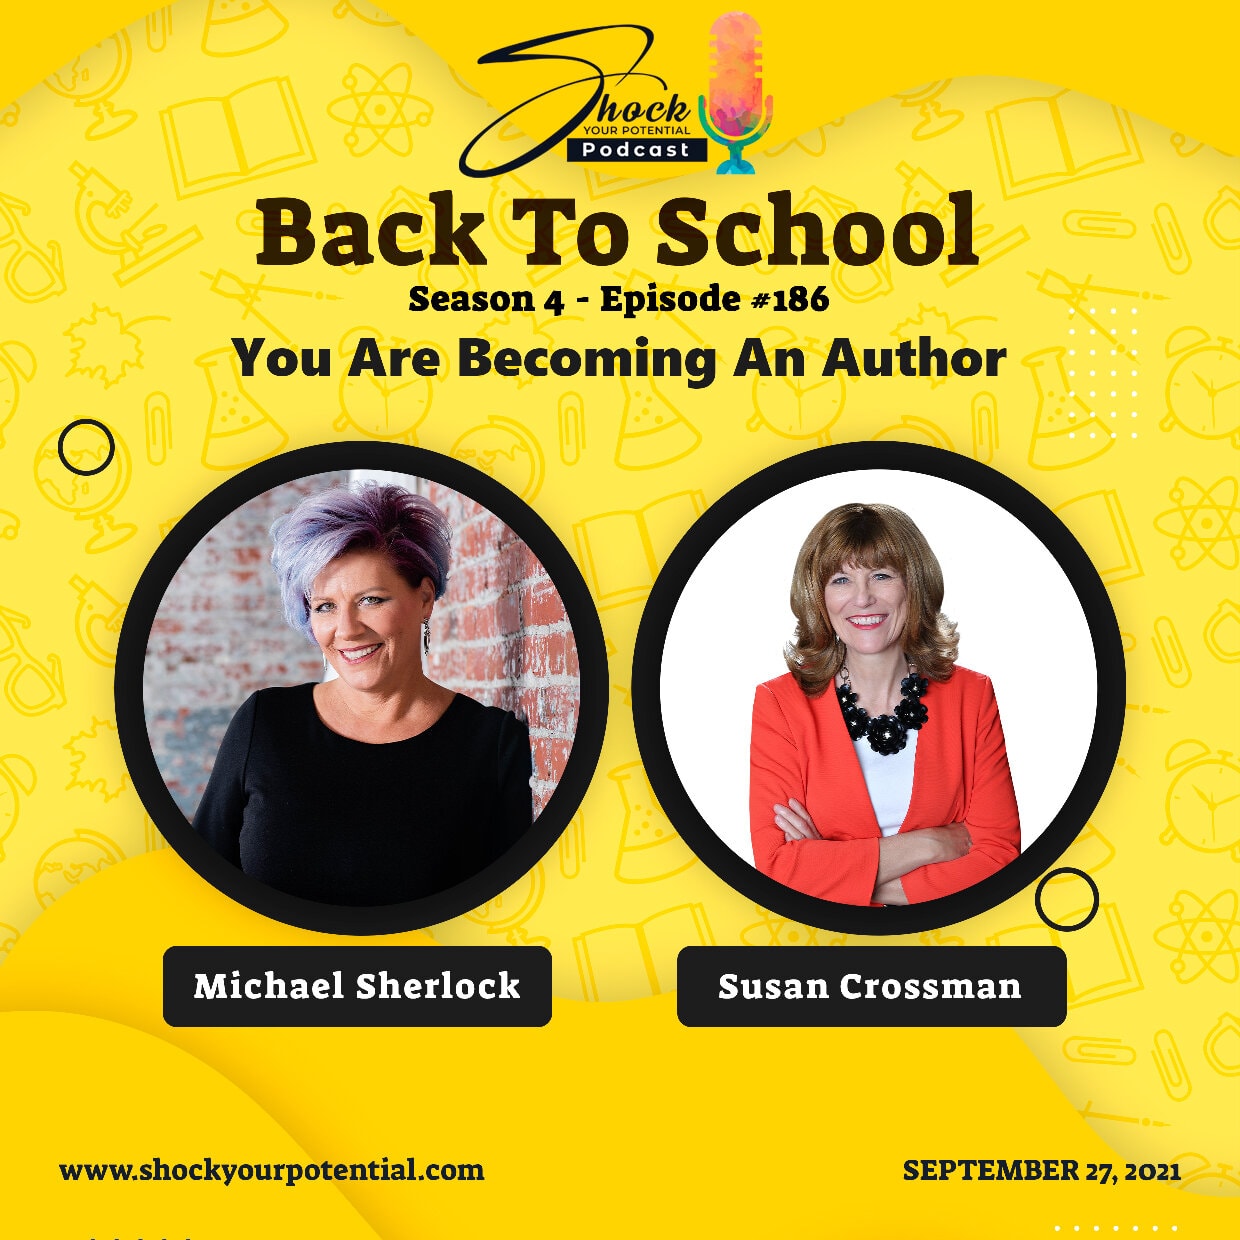 You Are Becoming An Author – Susan Crossman